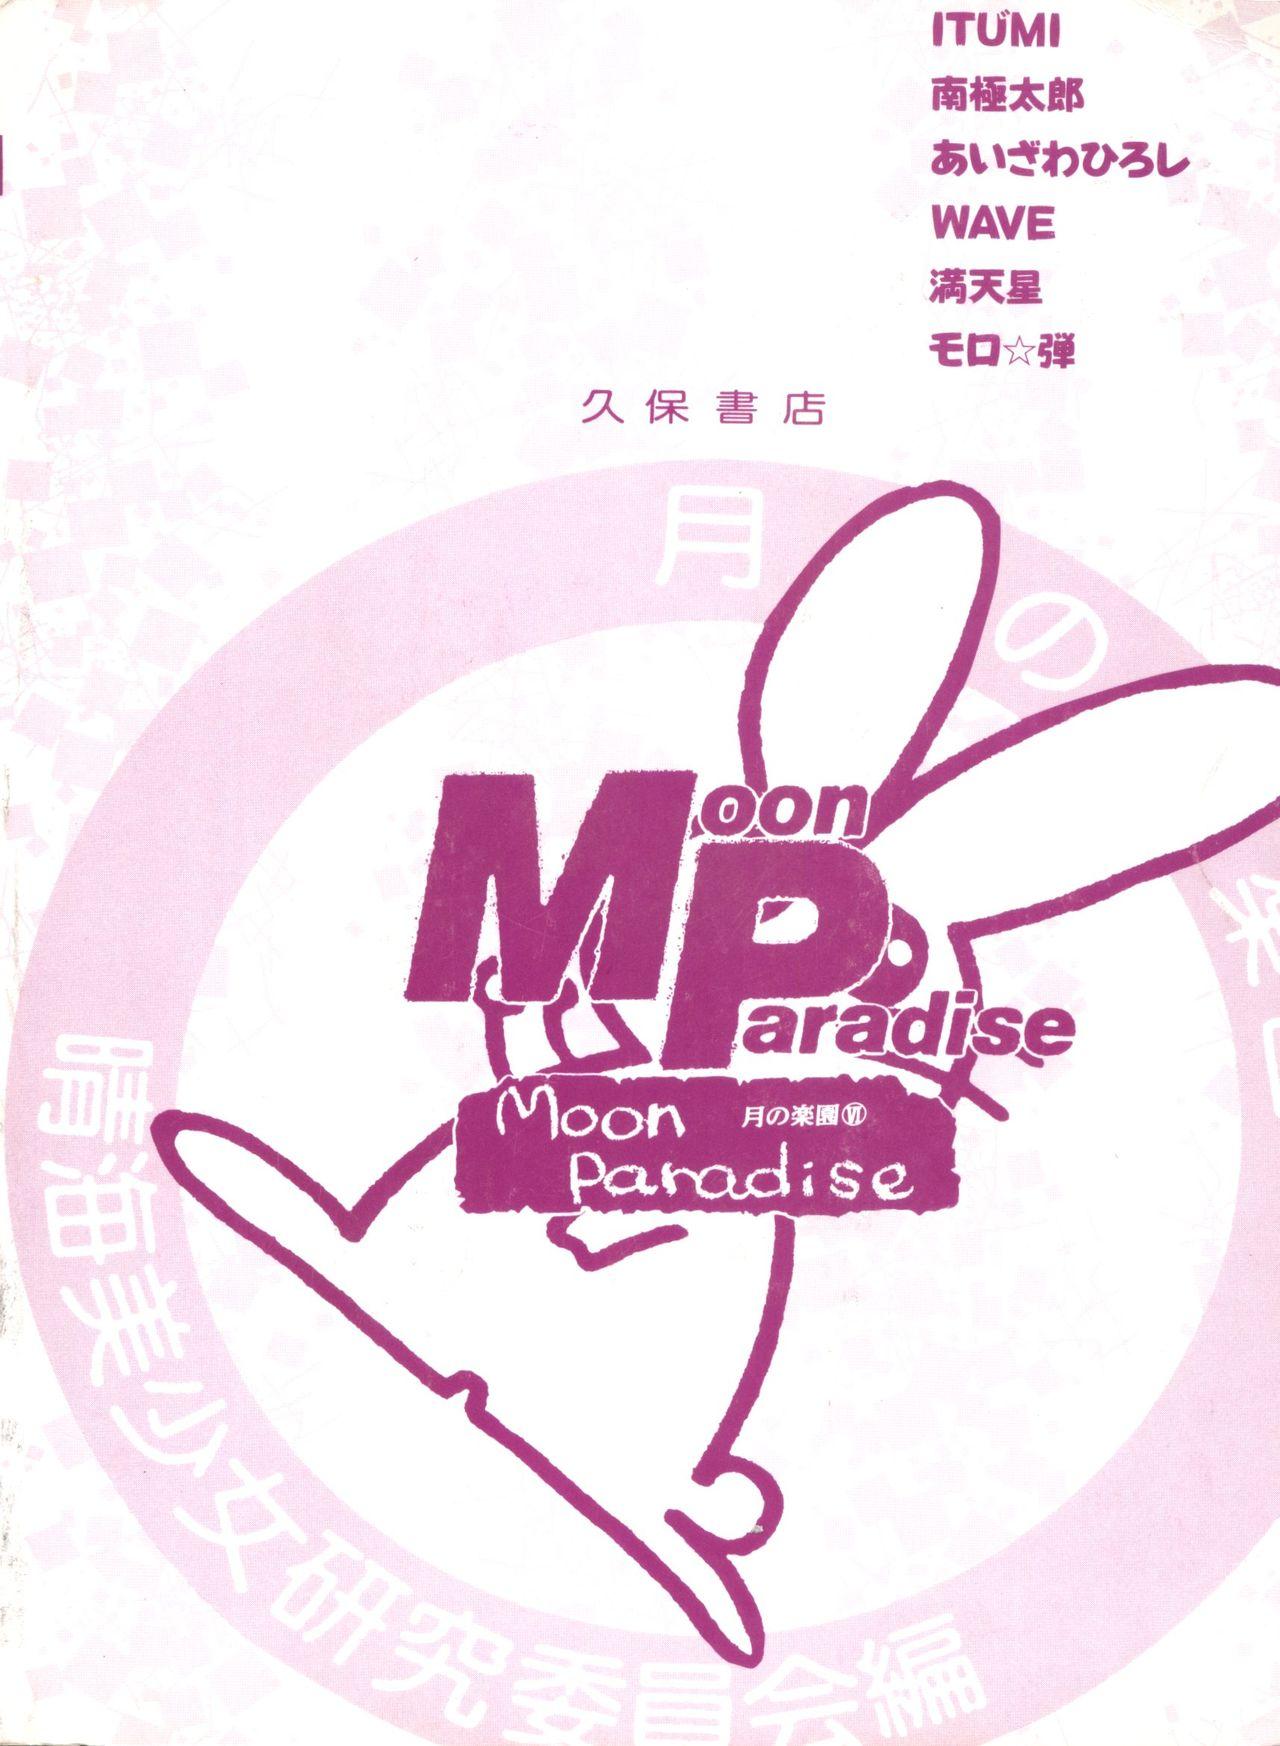 Bishoujo Doujinshi Anthology 10 - Moon Paradise 6 Tsuki no Rakuen 150